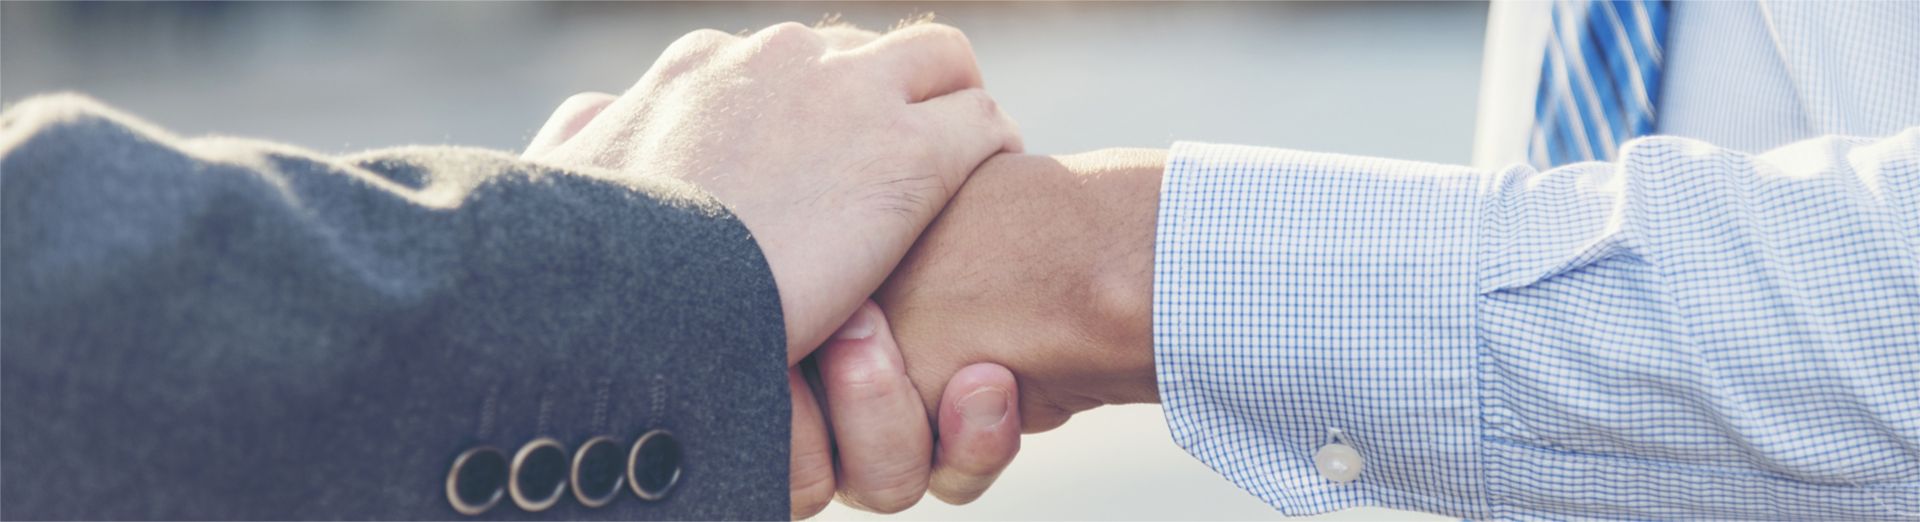 Image de deux hommes d'affaires se serrant la main